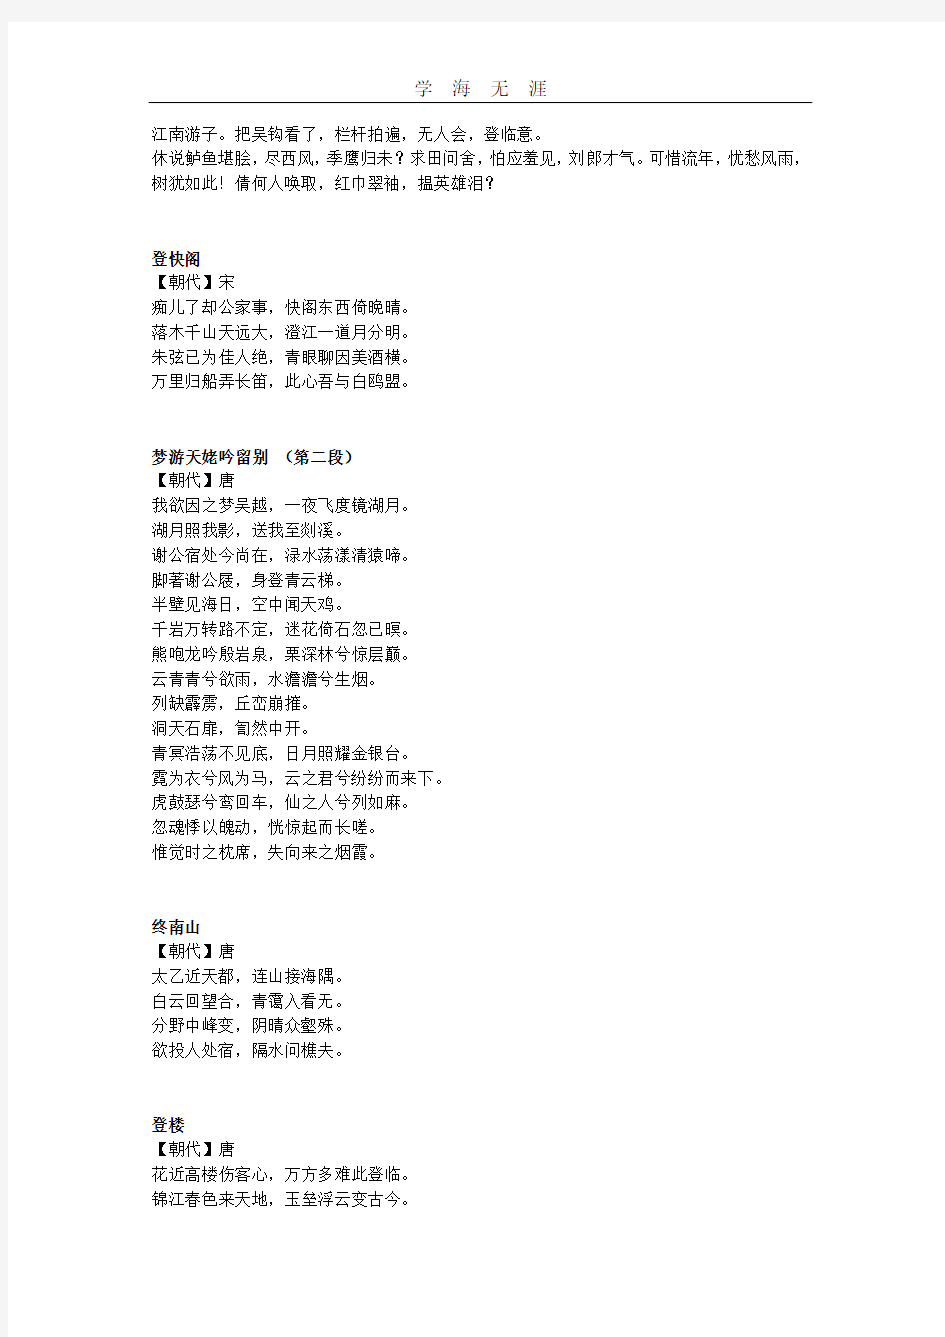 上海高考语文默写内容整理(2020).pdf